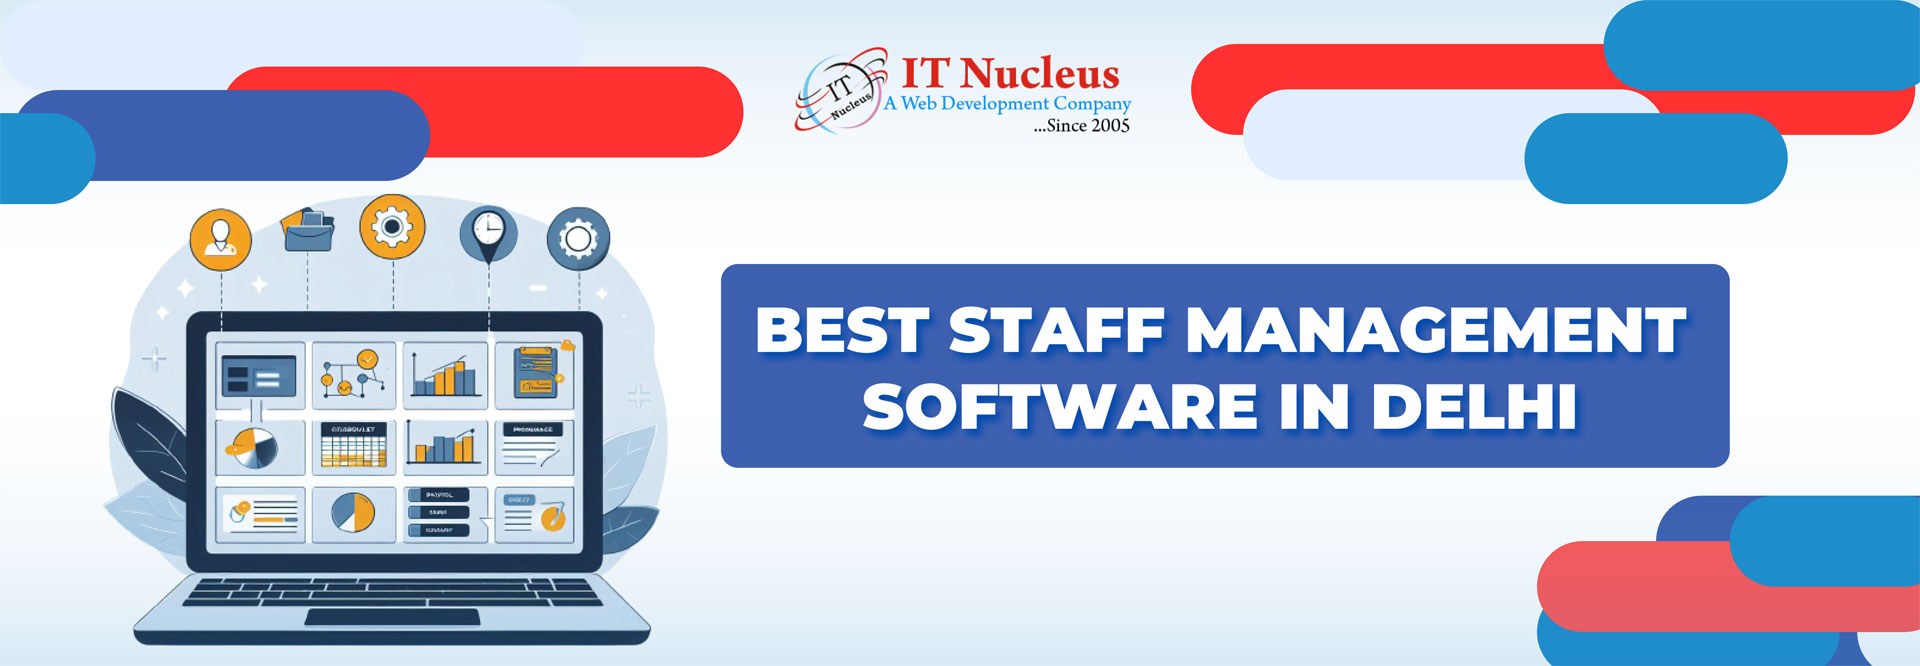 Best Staff Management Software In Delhi